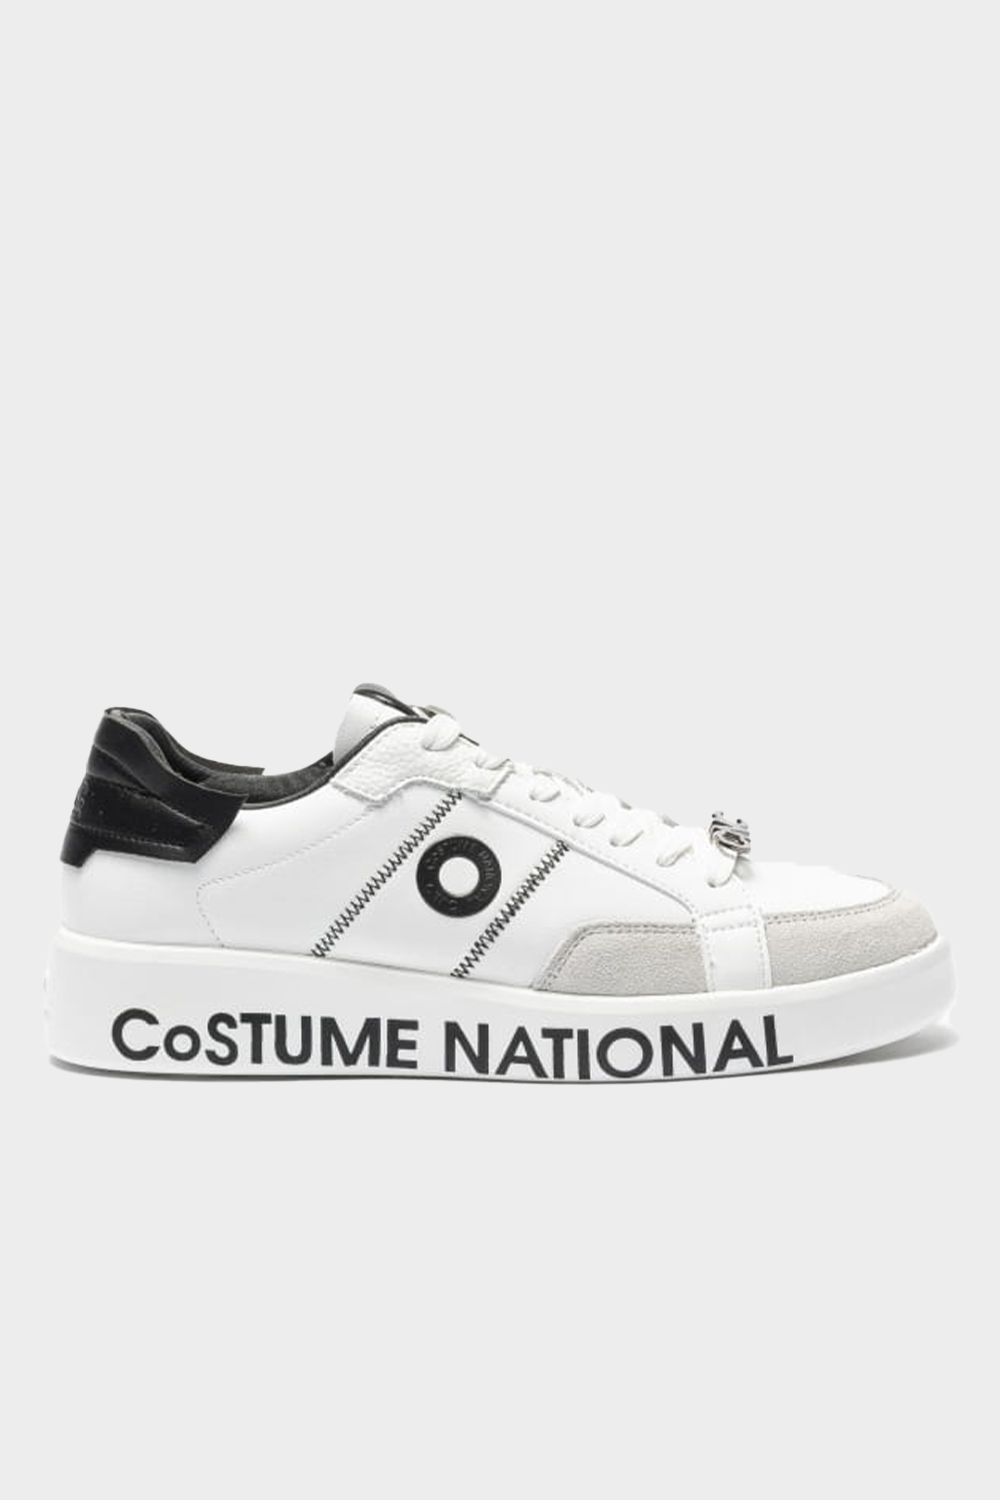 נעלי סניקרס לגברים בצבע לבן COSTUME NATIONAL Vendome online | ונדום .